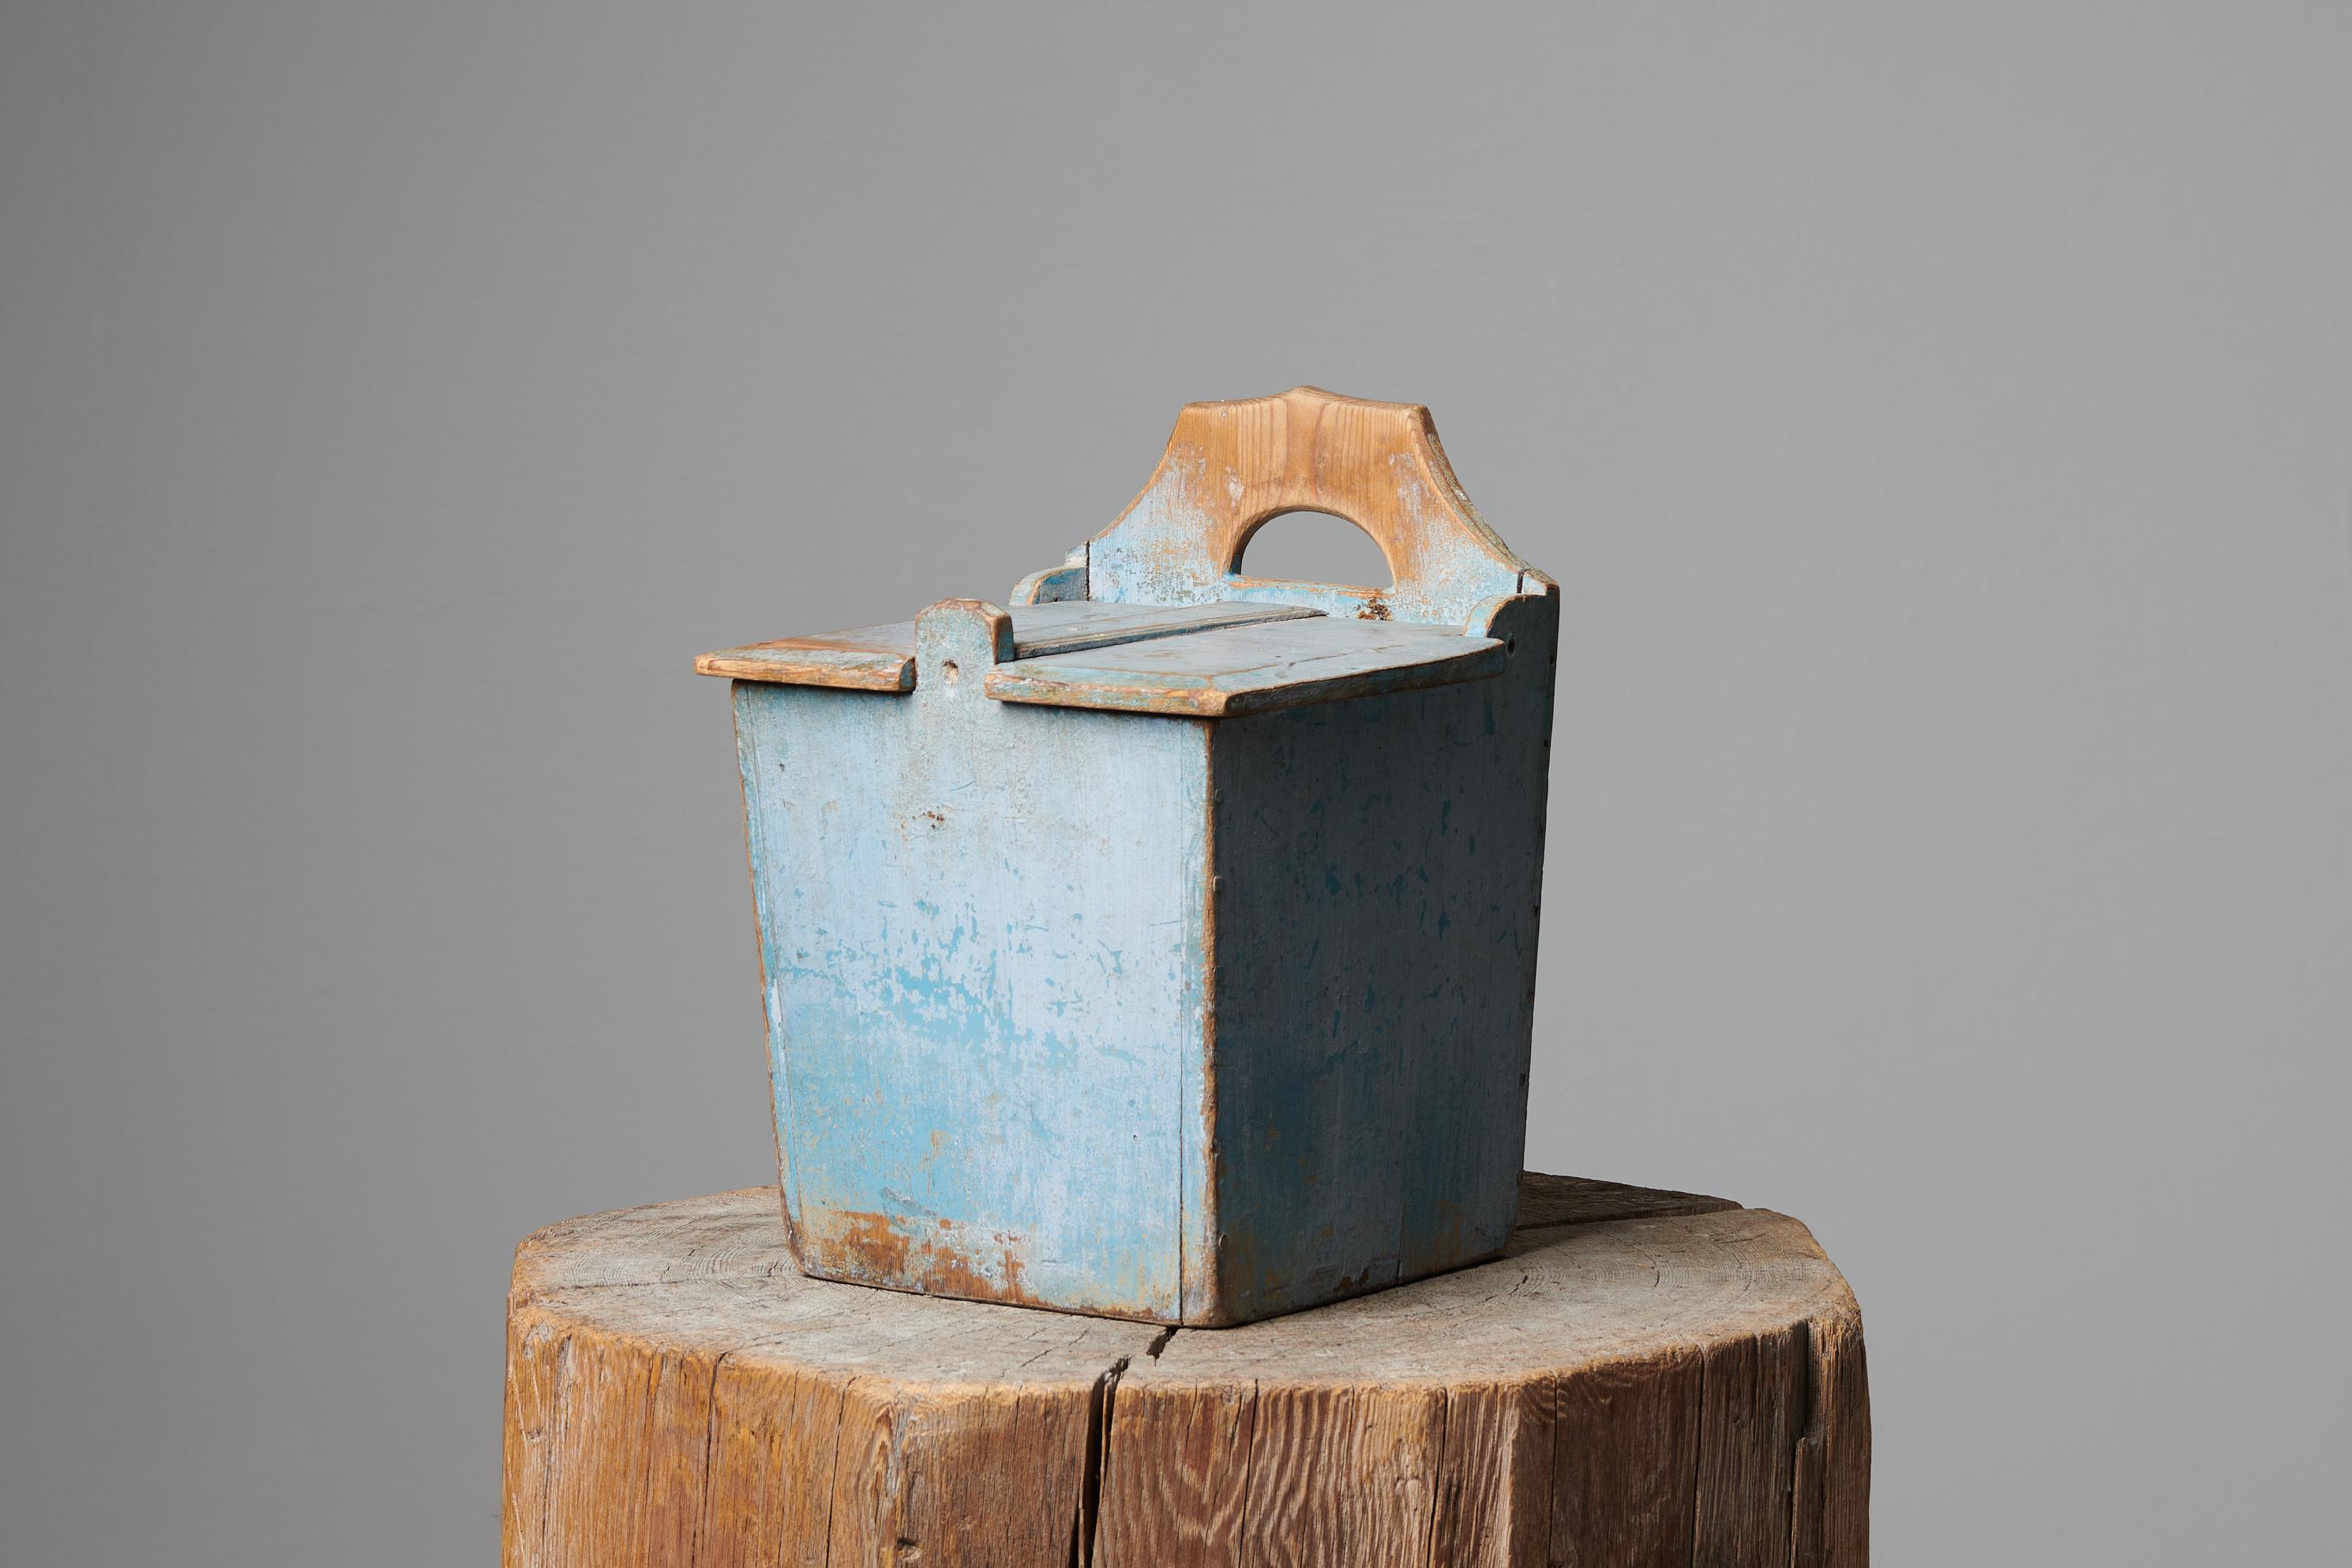 Ancienne boîte à farine artisanale de Suède réalisée dans l'art populaire au cours de la seconde moitié du XIXe siècle, vers 1860-1870. Ces boîtes étaient soit accrochées au mur, soit placées sur le comptoir afin de conserver la farine. Il est